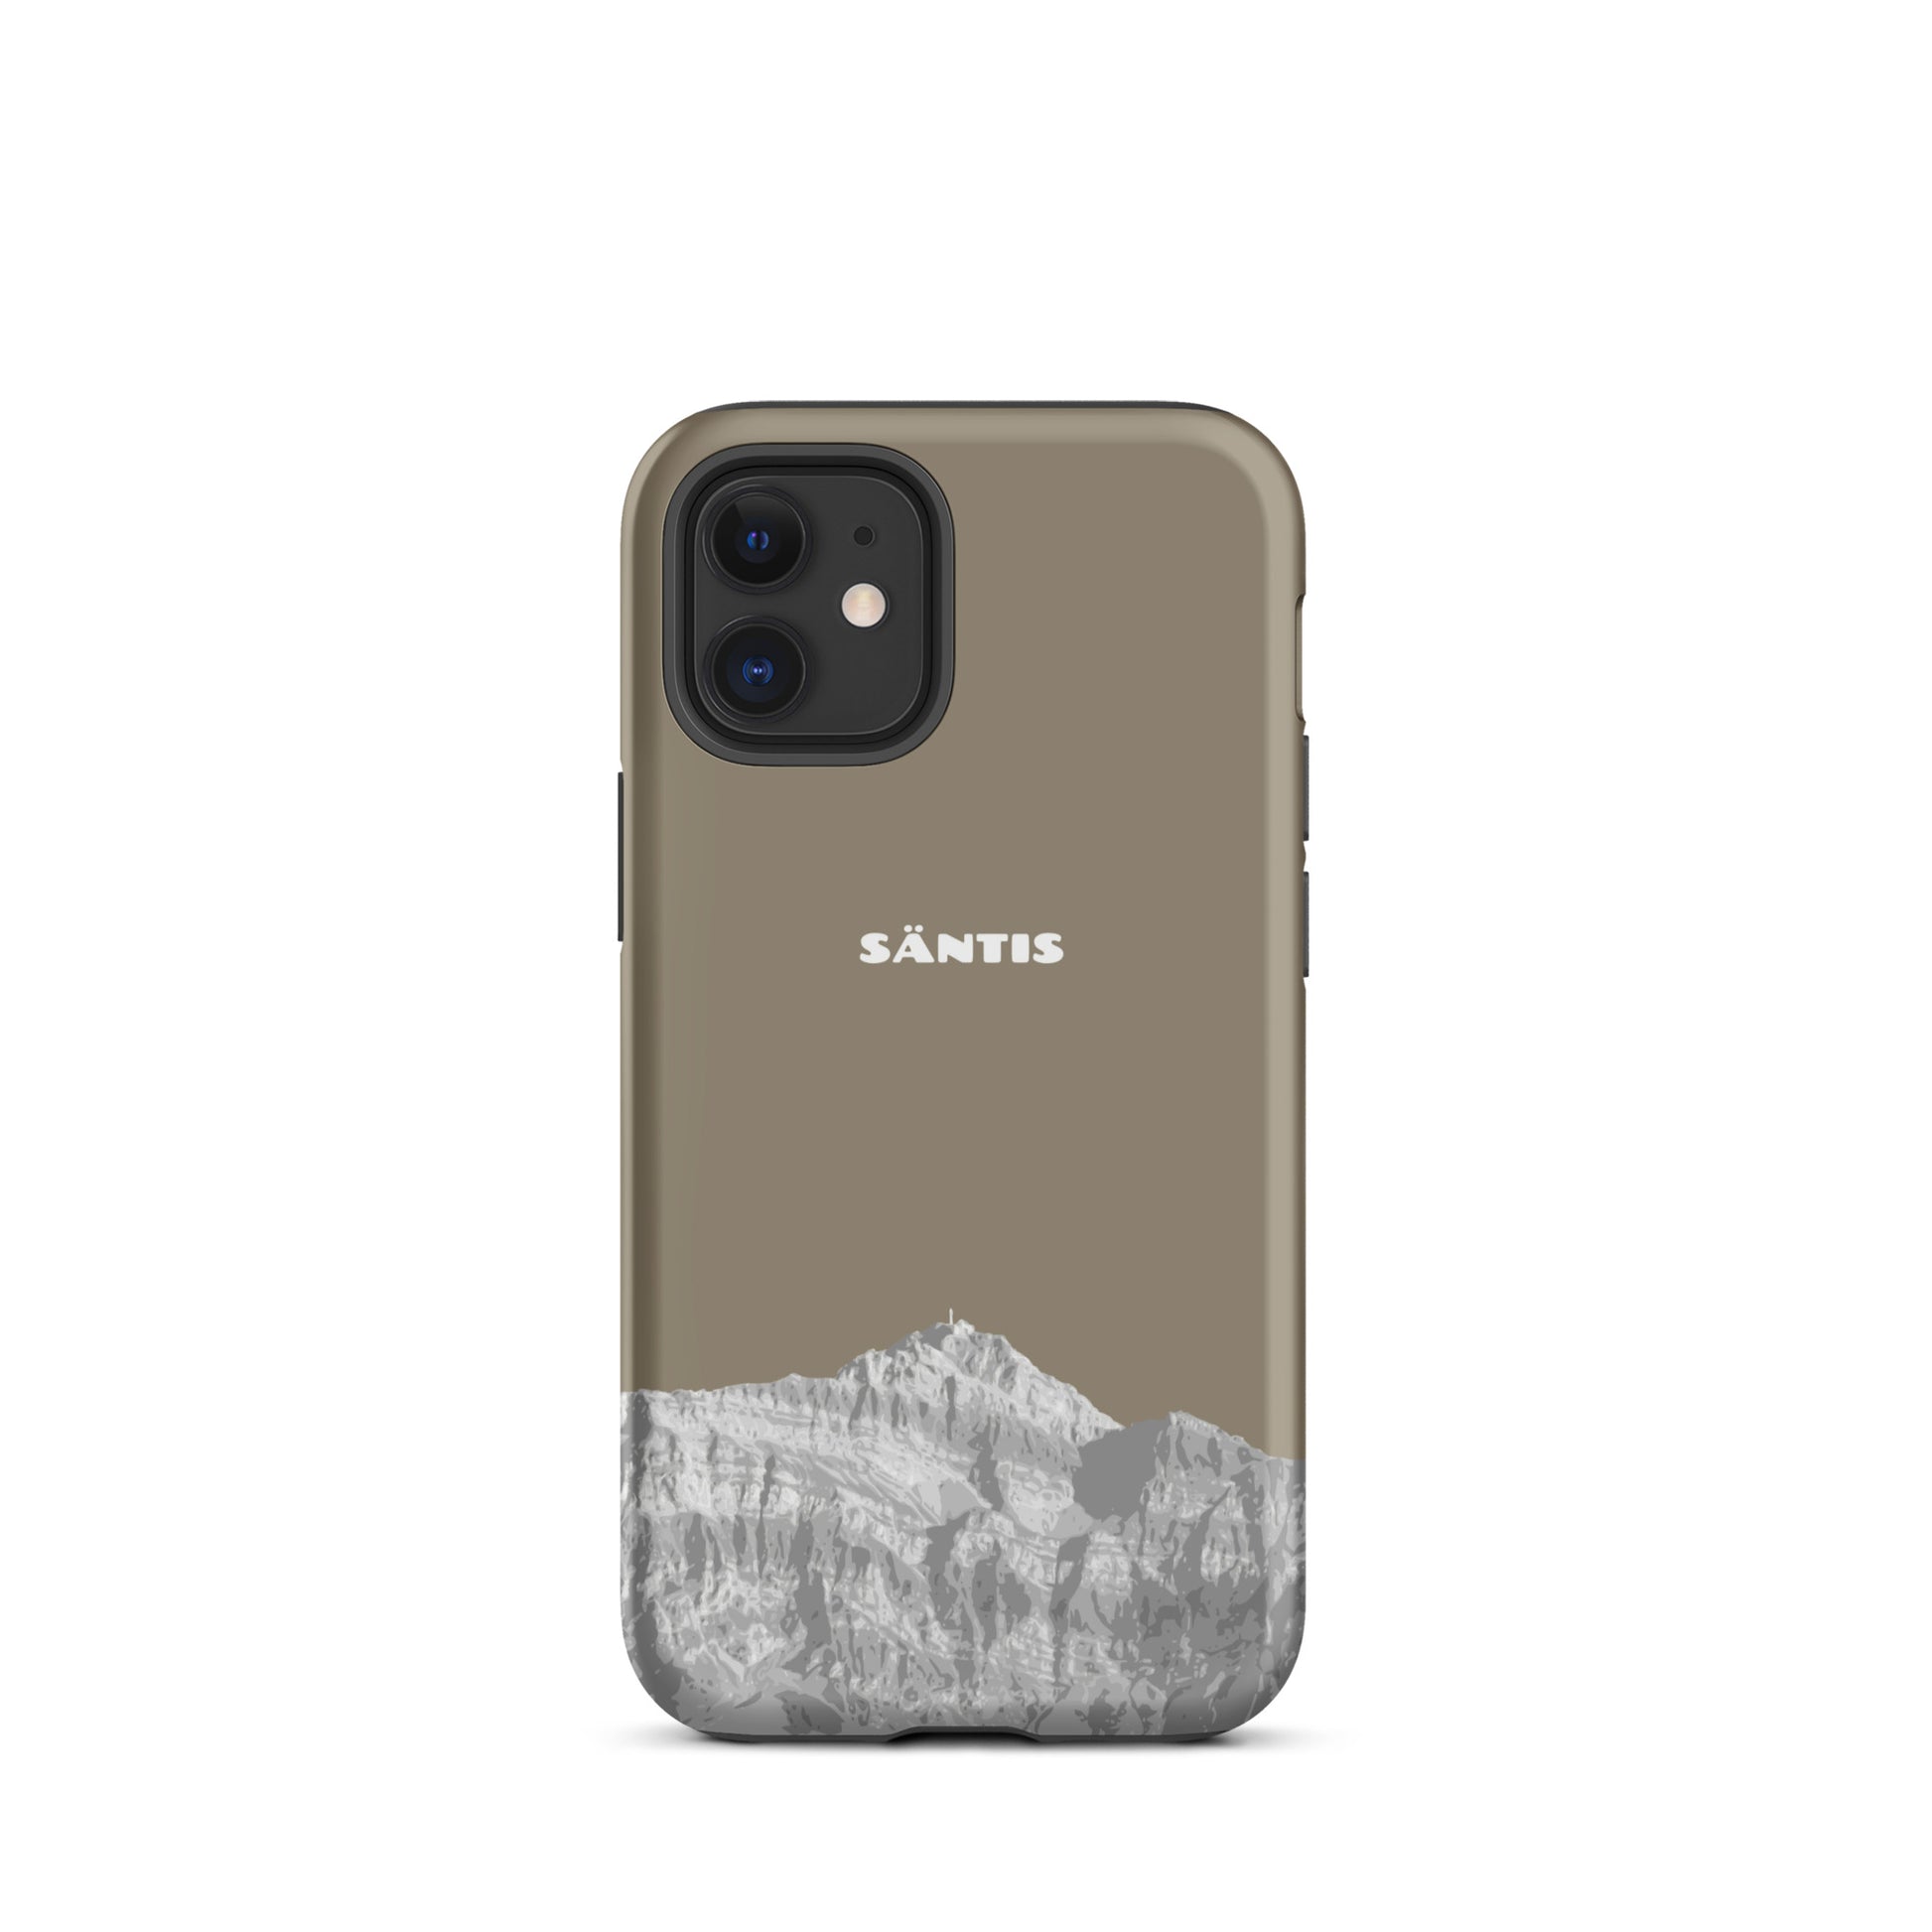 Hülle für das iPhone 12 Mini von Apple in der Farbe Graubraun, dass den Säntis im Alpstein zeigt.